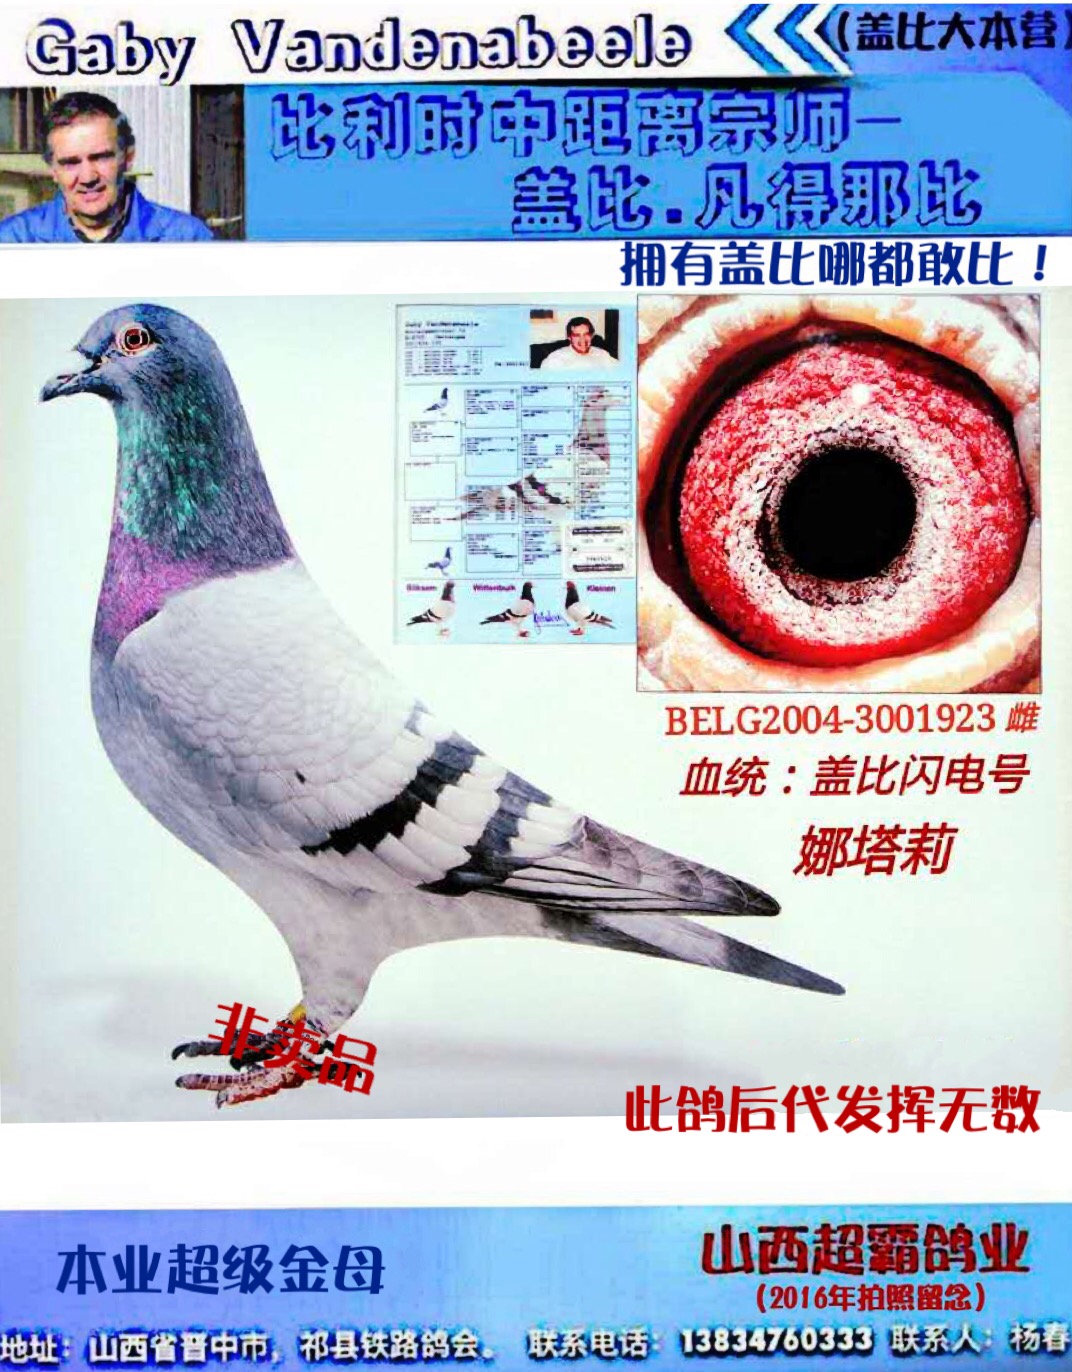 盖比闪电号_山西超霸鸽业_ag188.com爱鸽商城_中国